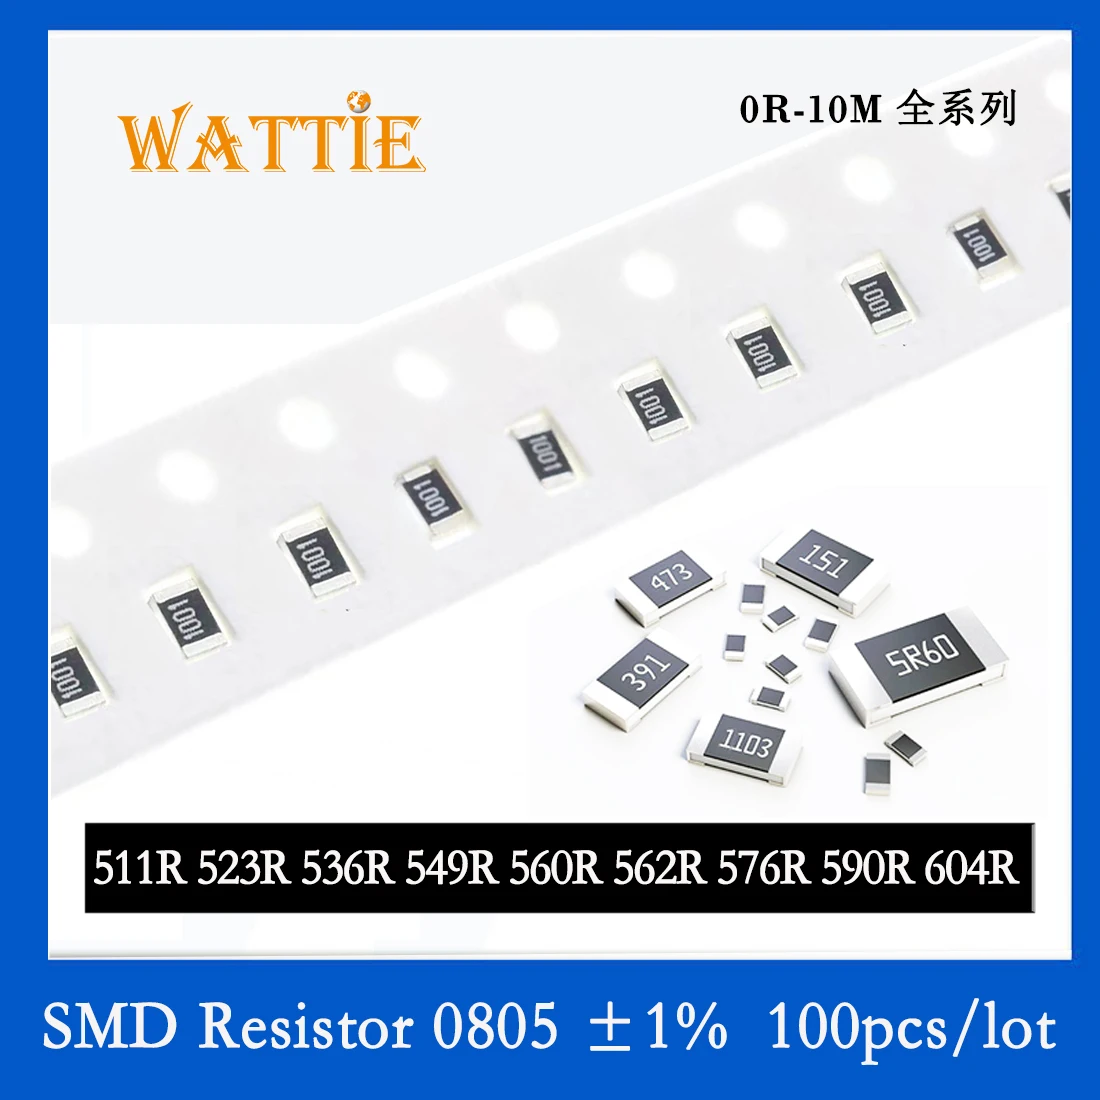 

SMD Resistor 0805 1% 511R 523R 536R 549R 560R 562R 576R 590R 604R 100PCS/lot chip resistors 1/8W 2.0mm*1.2mm